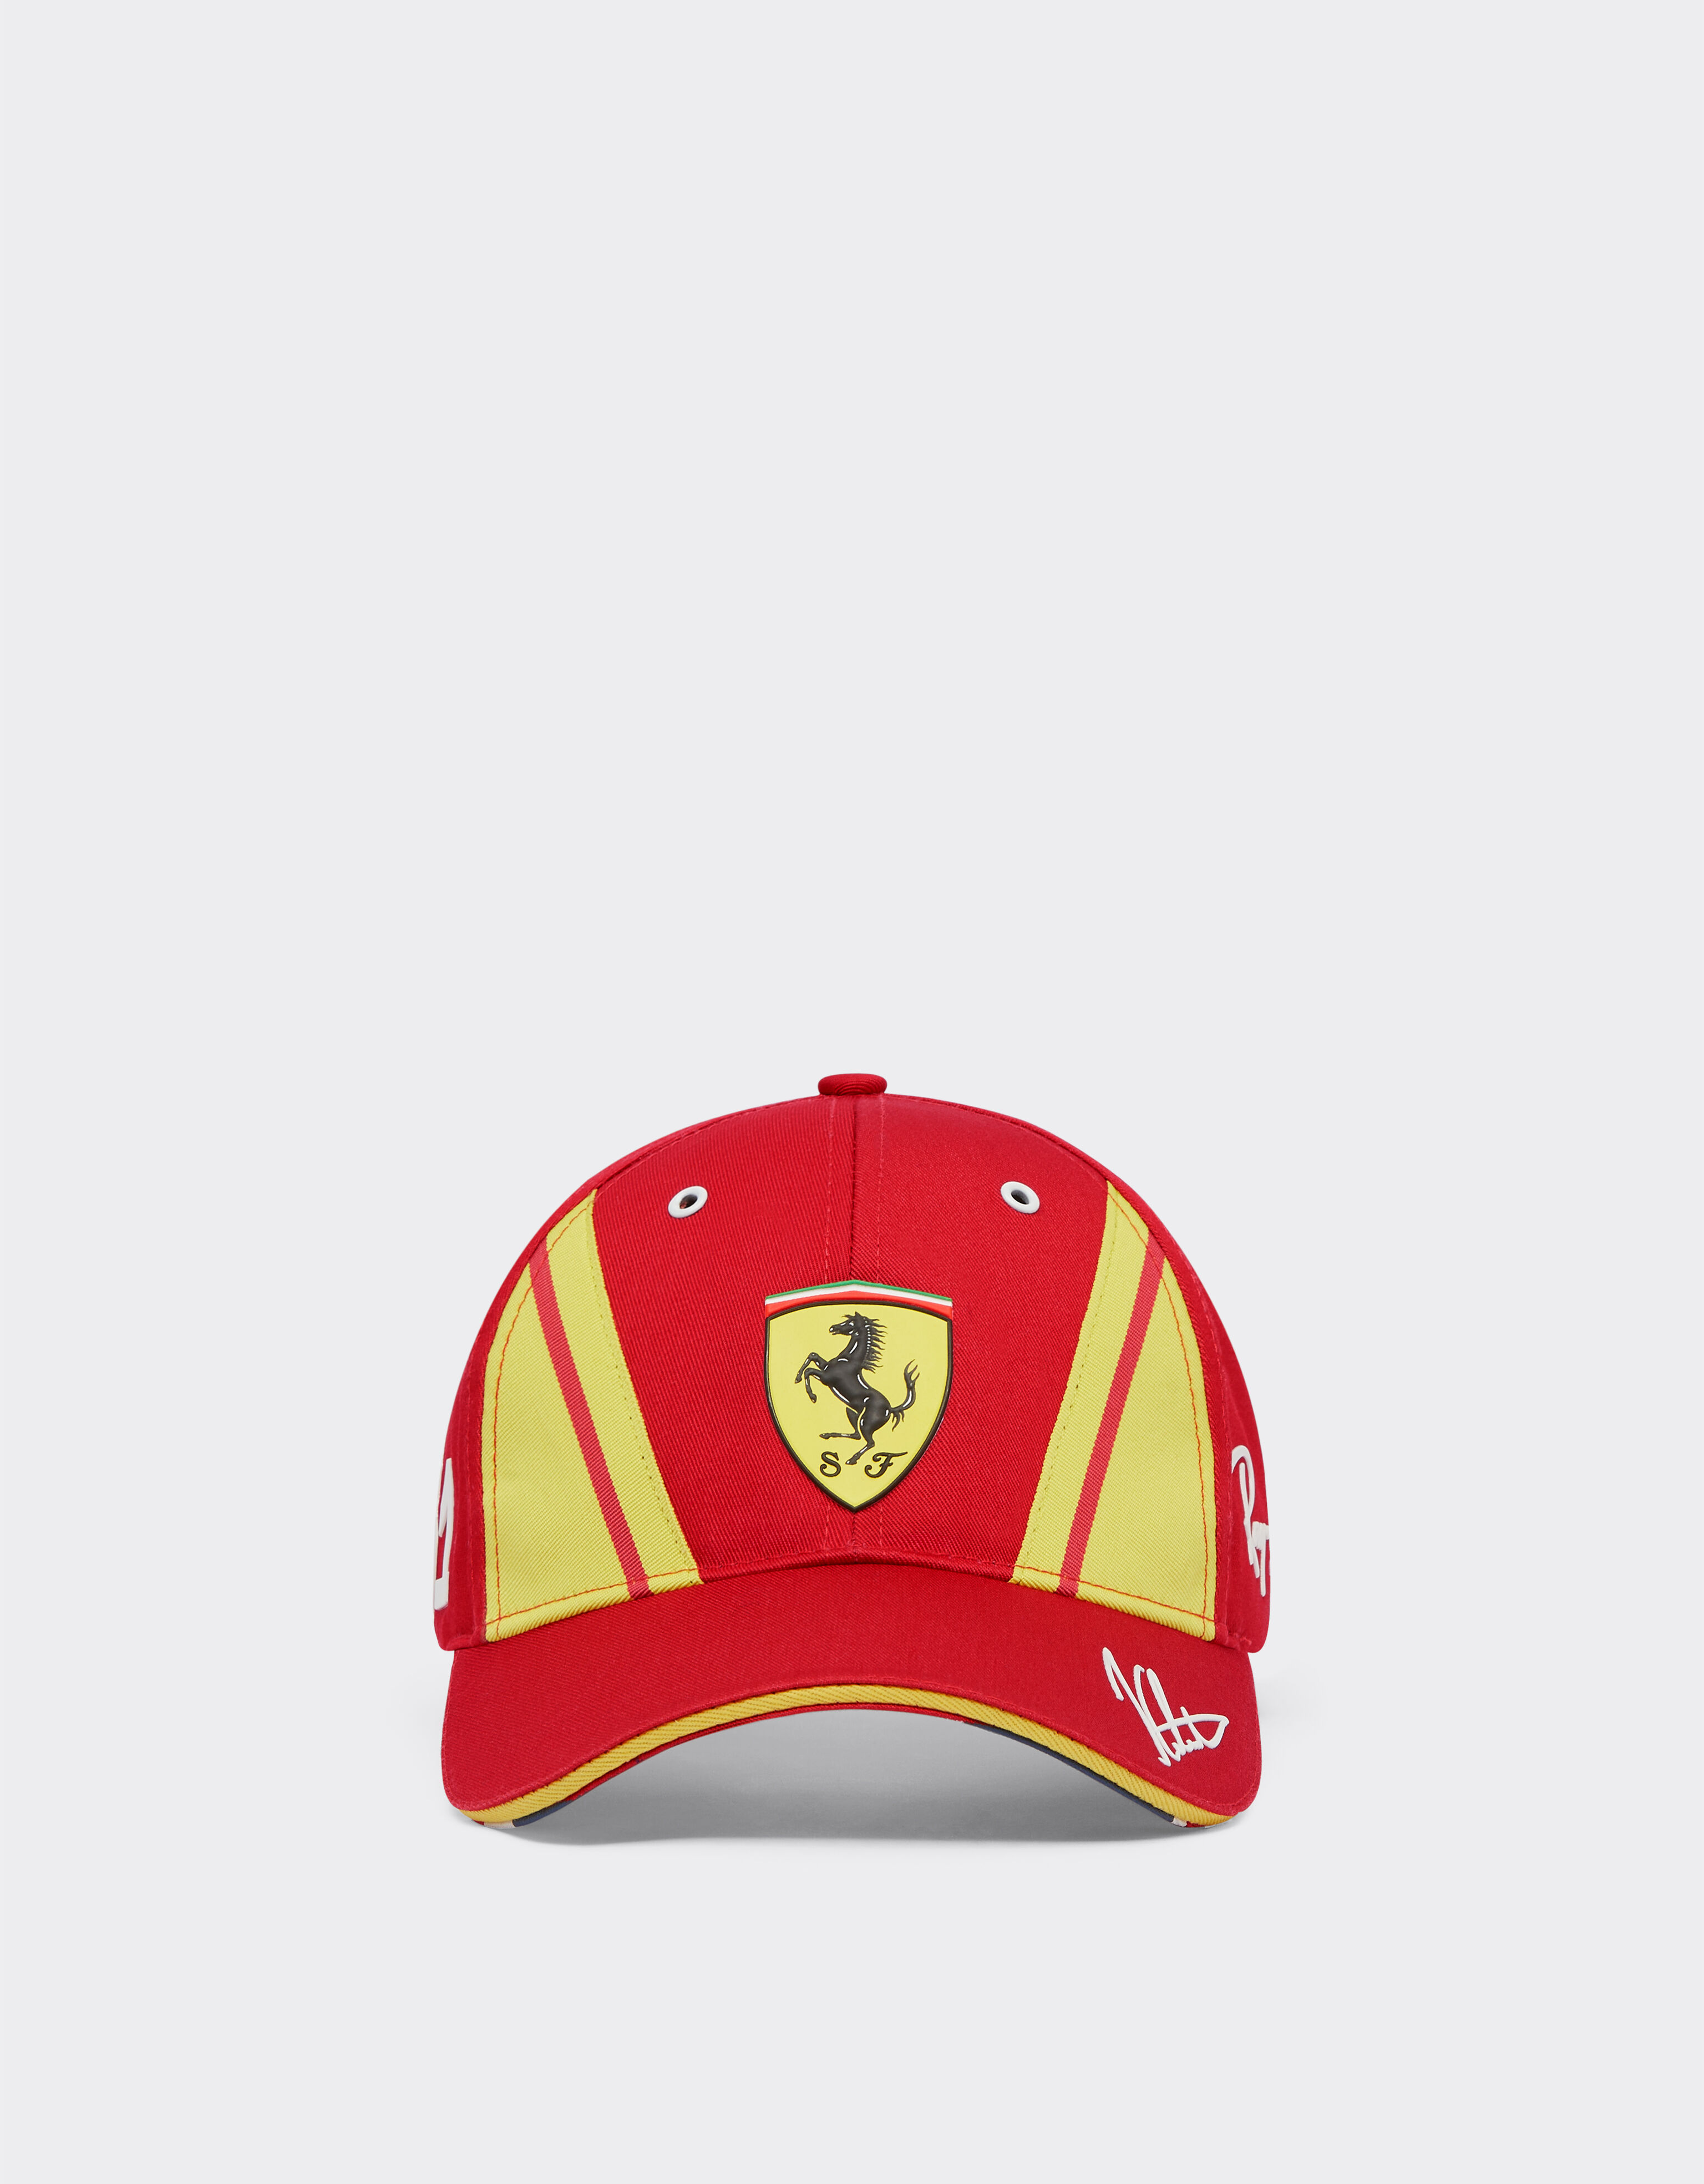 Ferrari Cappellino Calado Ferrari Hypercar - Edizione limitata Rosso F1327f